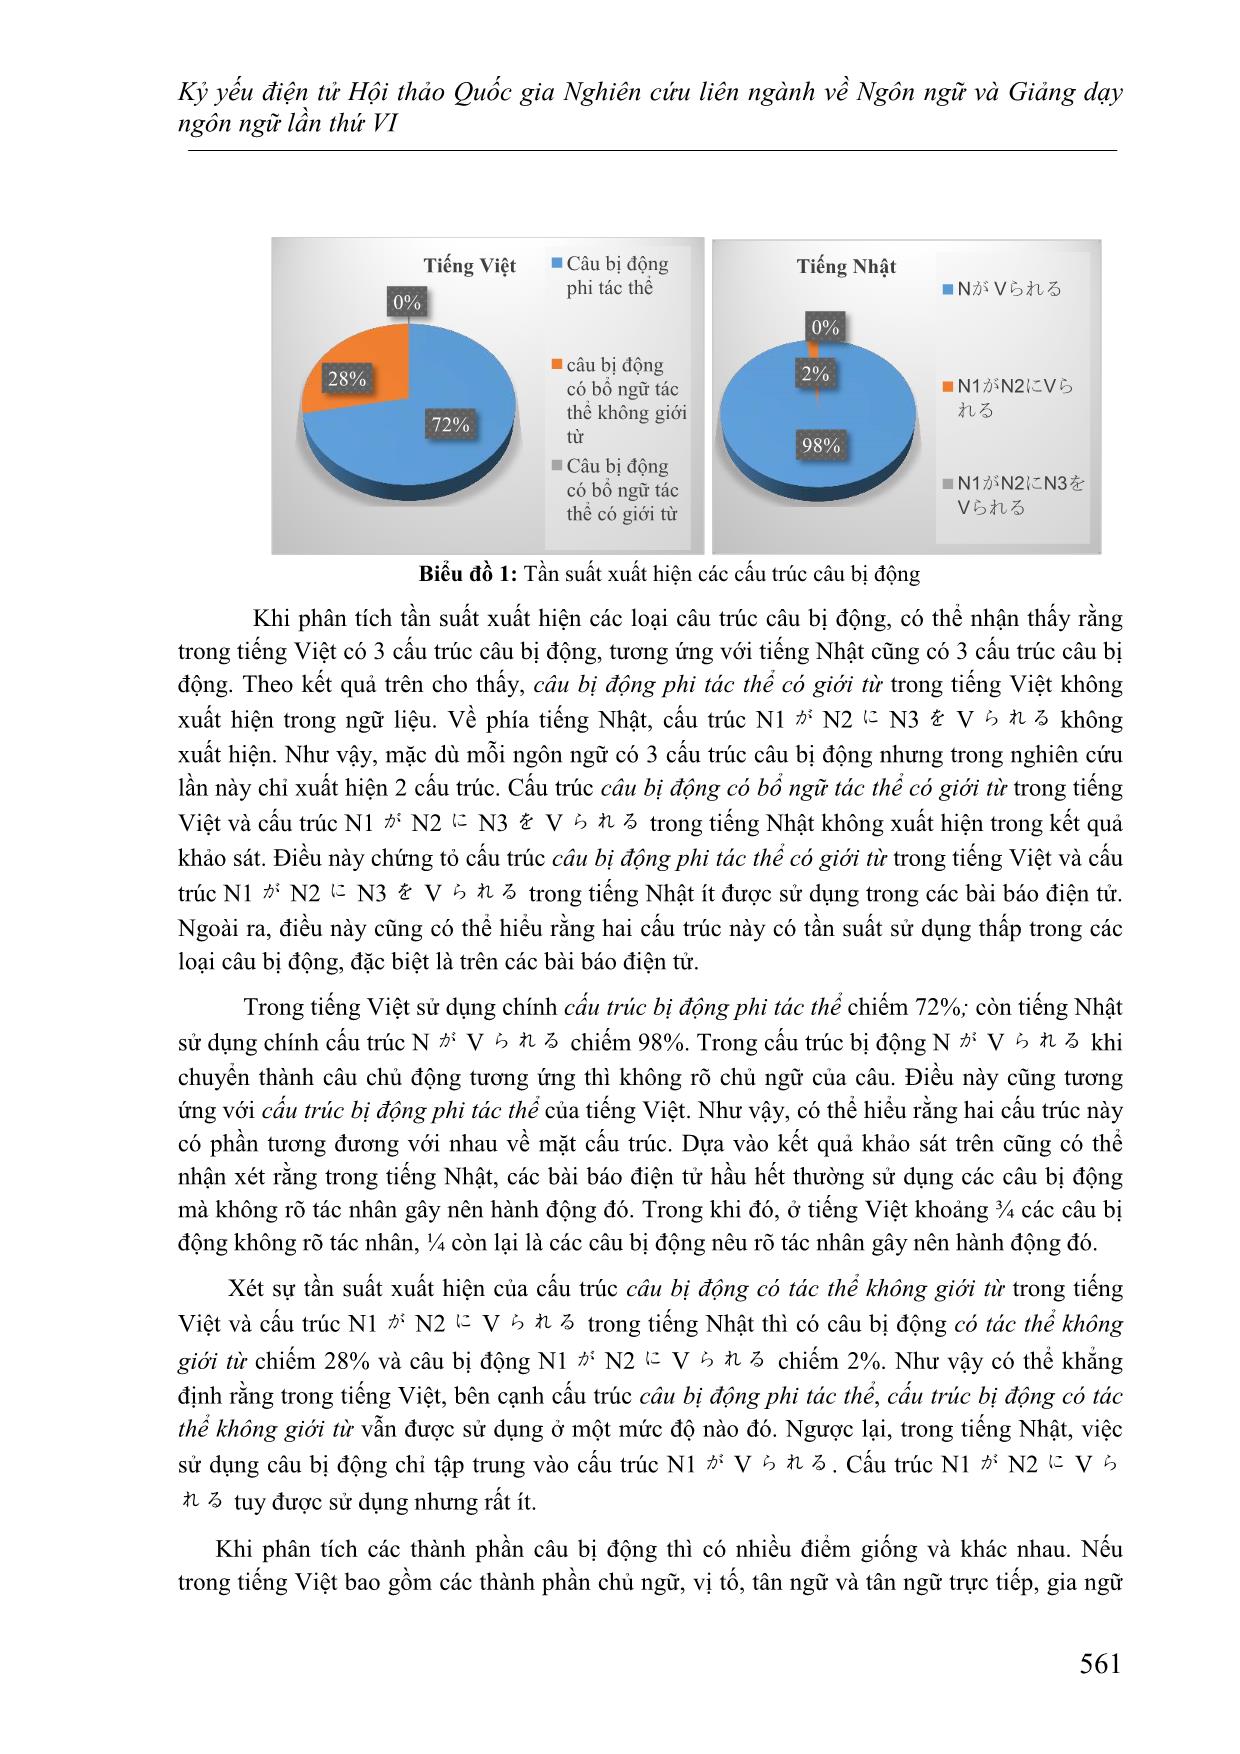 Đối chiếu đặc điểm cö pháp của câu bị động trong tiếng Việt và Tiếng Nhật trang 5